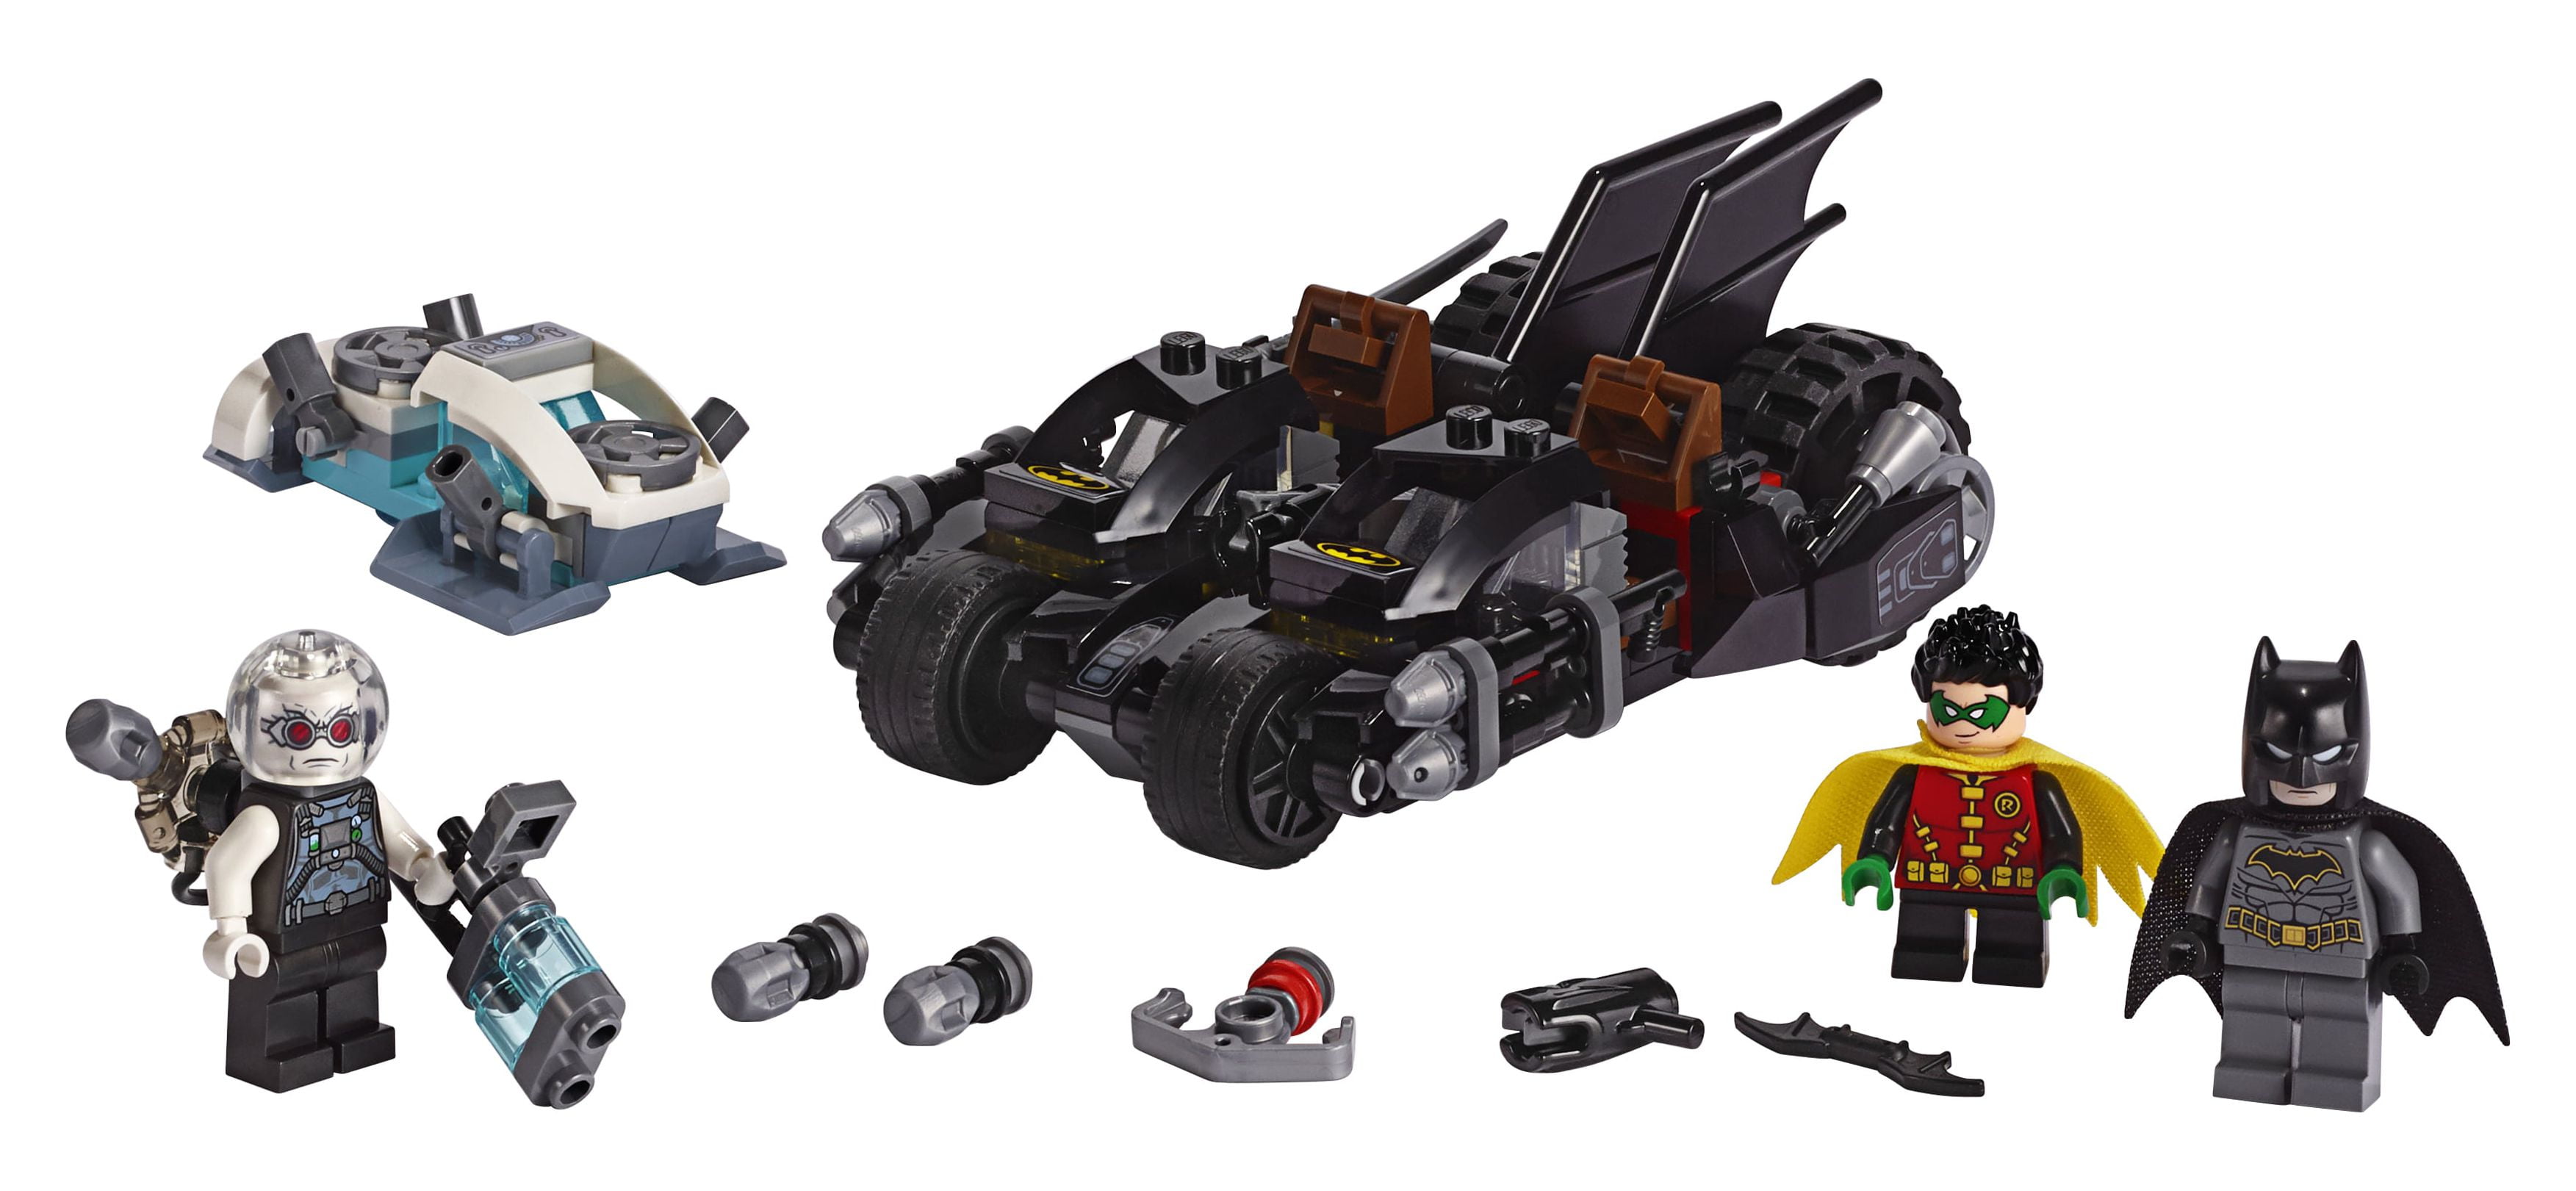 LEGO DC Comics Super Heroes Mr. Freeze Toy Batcycle Battle 76118 (200  Pieces)